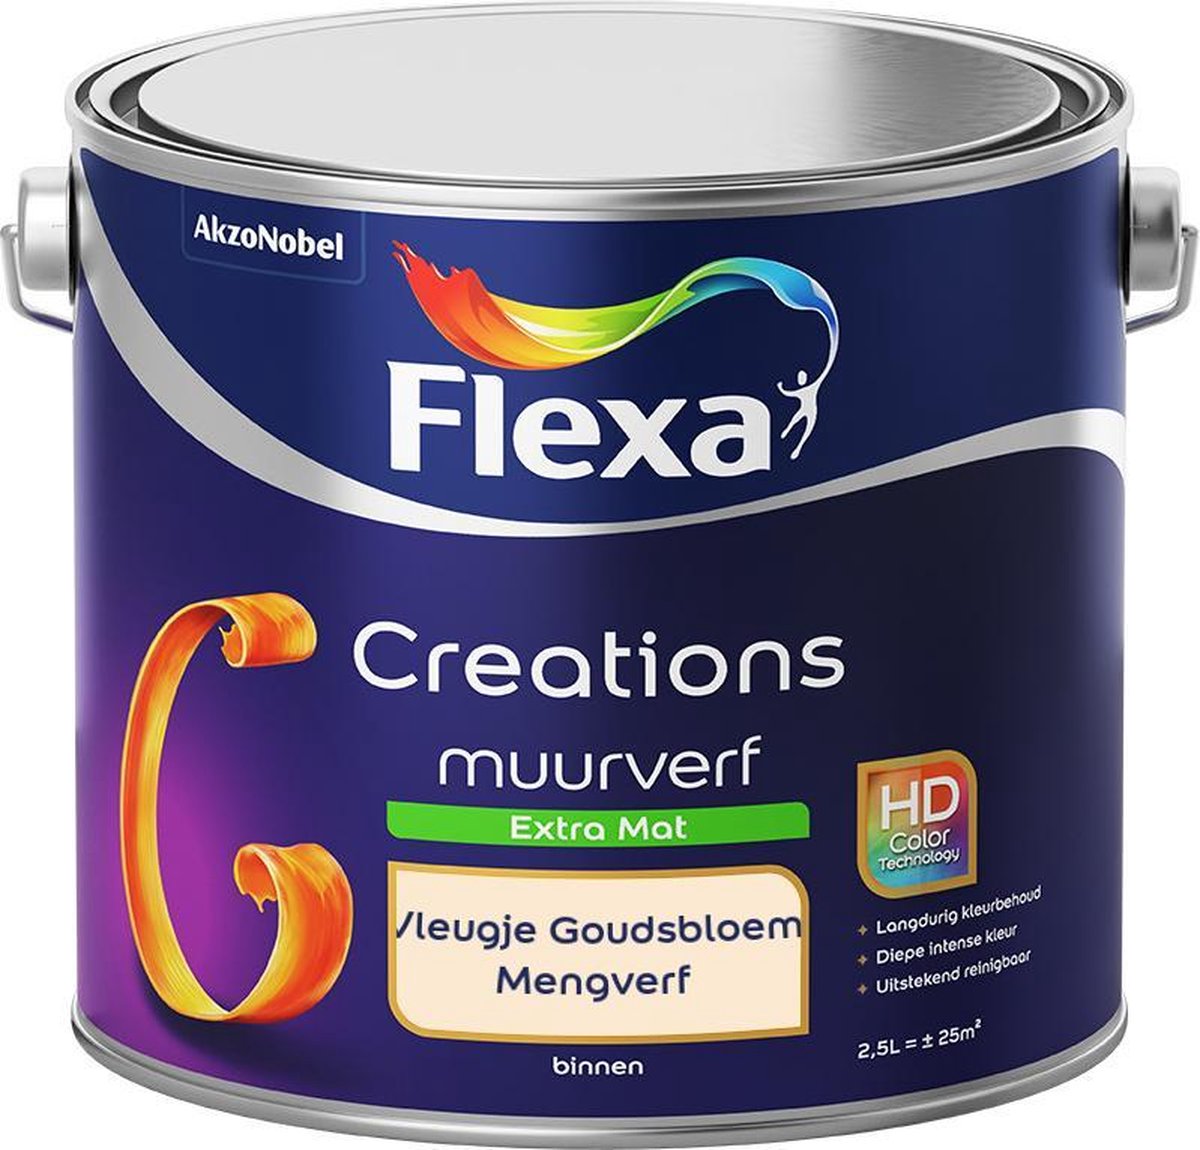 Flexa Creations Muurverf - Extra Mat - Mengkleuren Collectie - Vleugje Goudsbloem - 2,5 liter